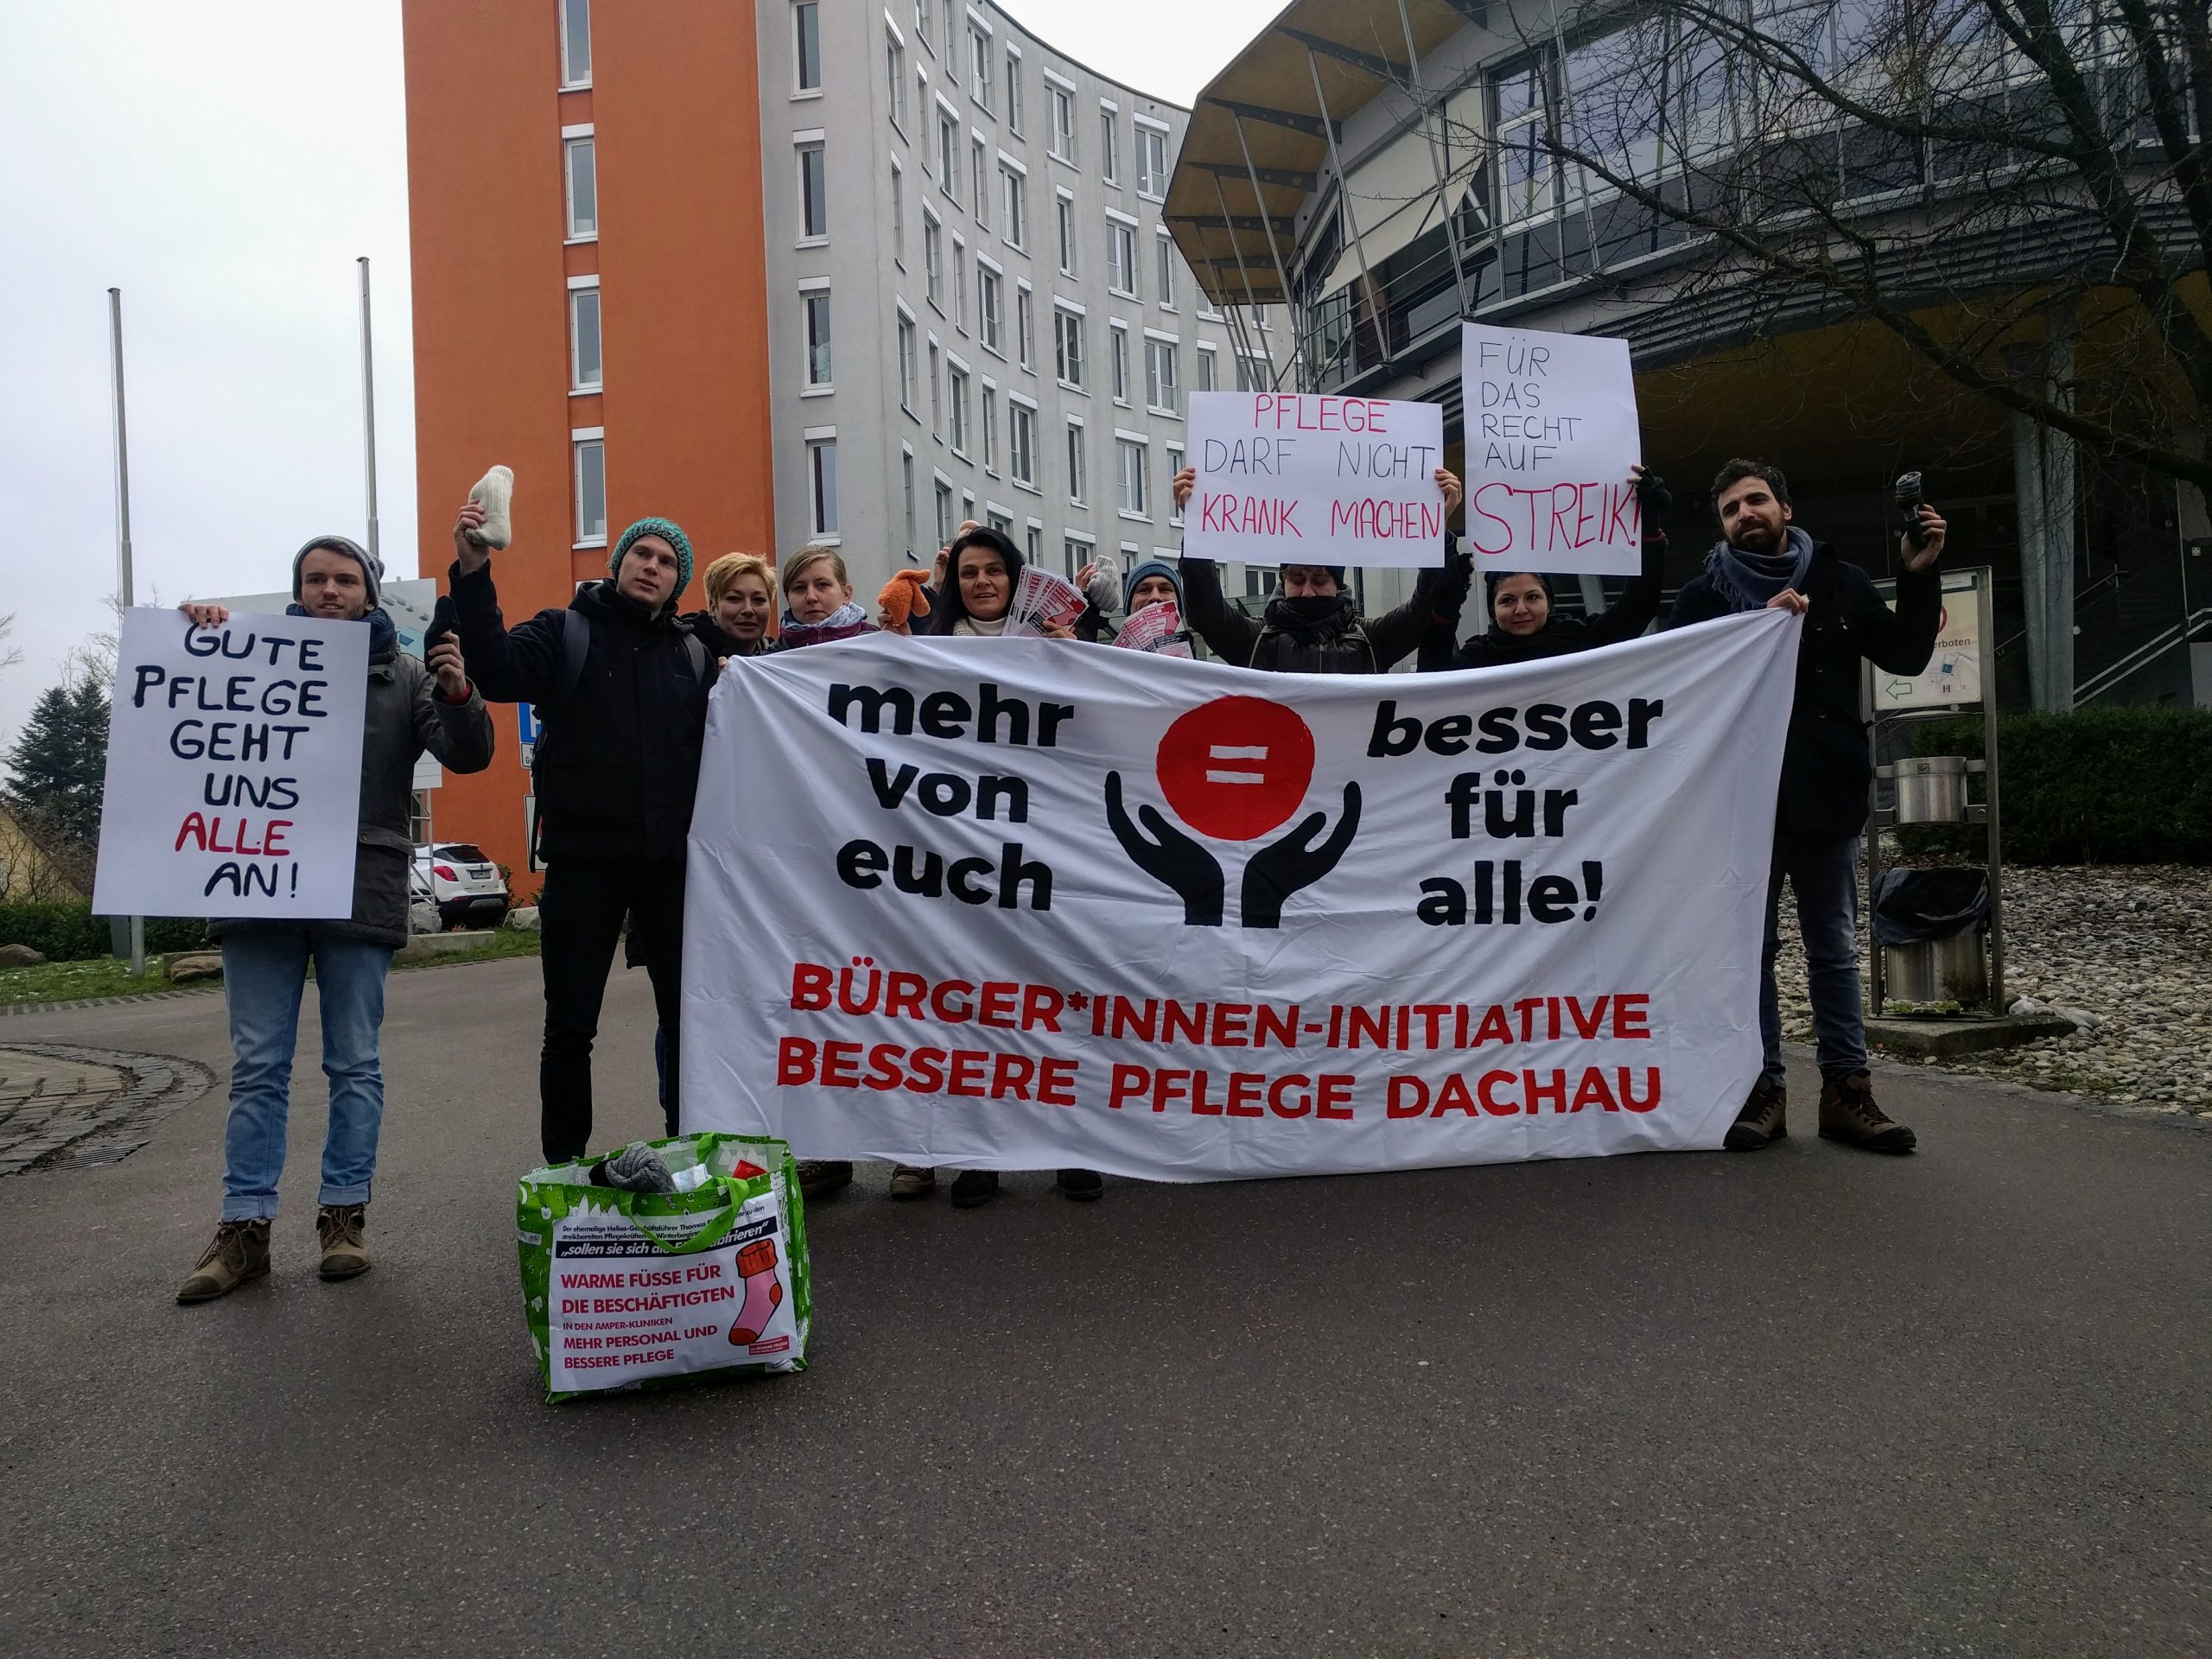 Mehr von euch ist besser für alle: Solidarität vor dem Helios-Amper-Klinikum Dachau